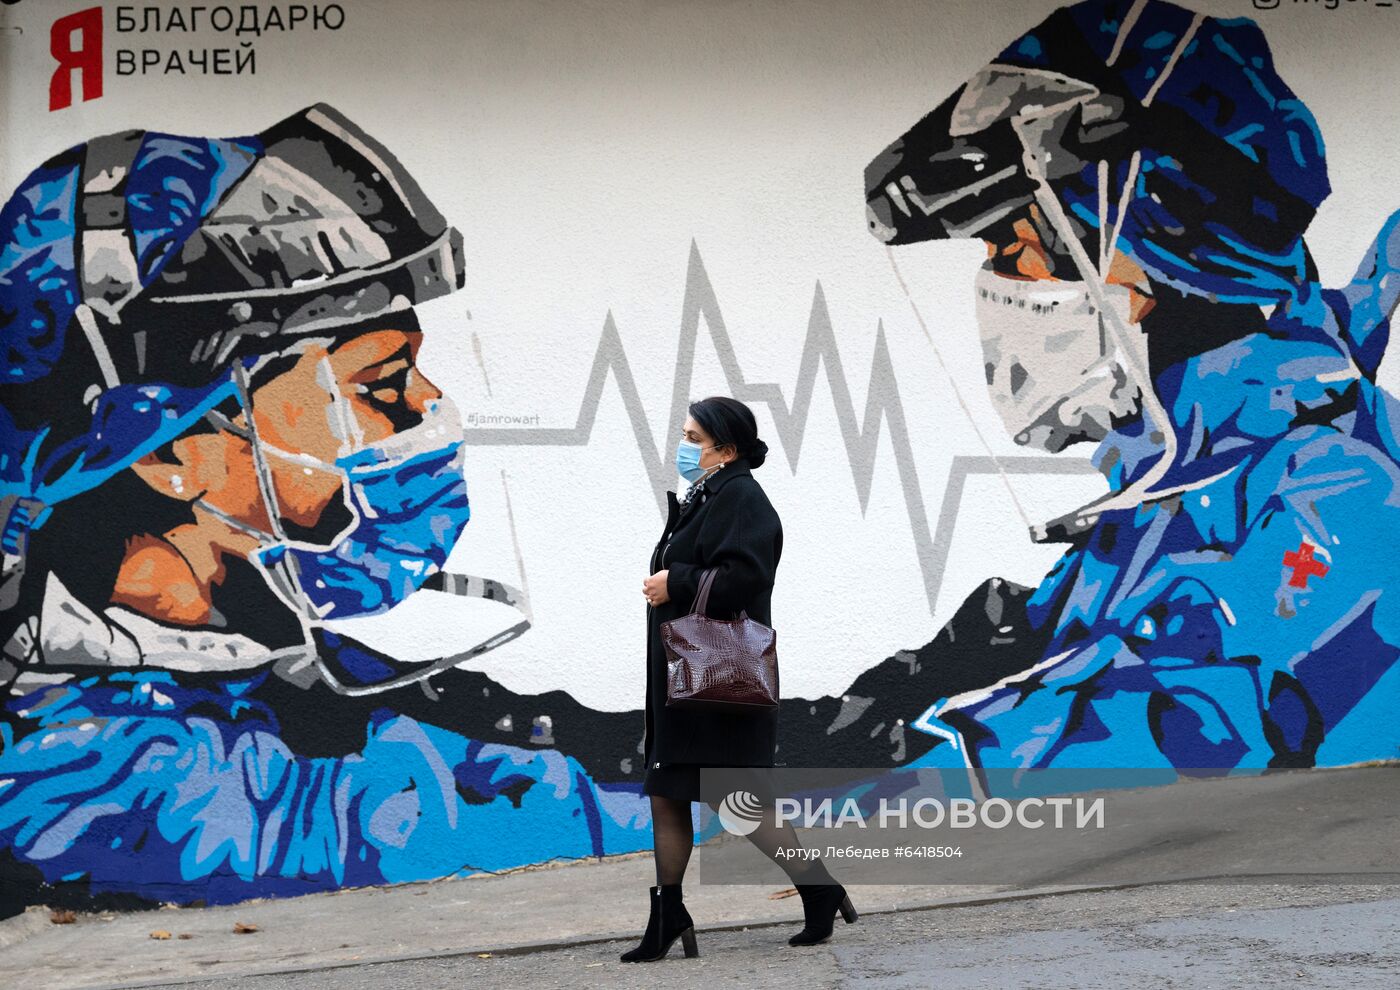 Граффити "Я благодарю врачей" в Сочи